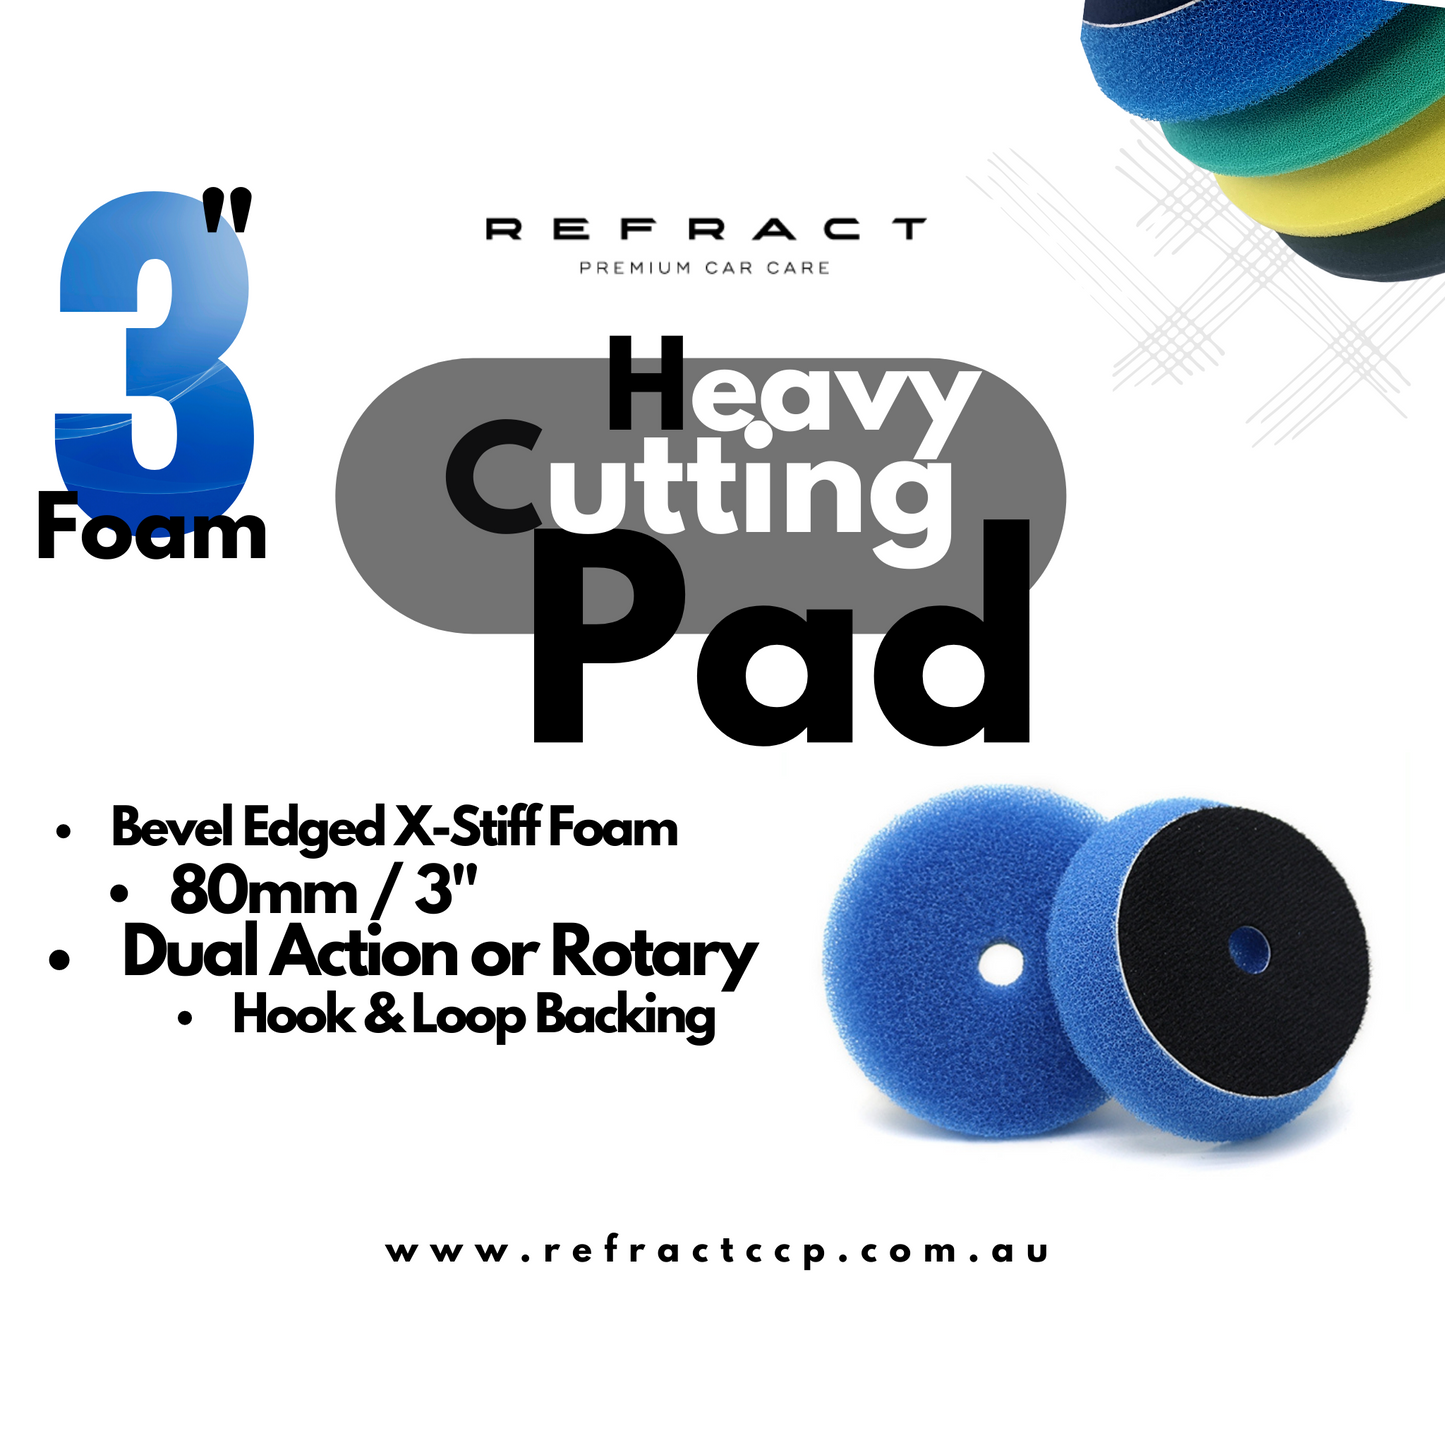 Blue Foam X-Heavy Cutting Pads - Open Cell